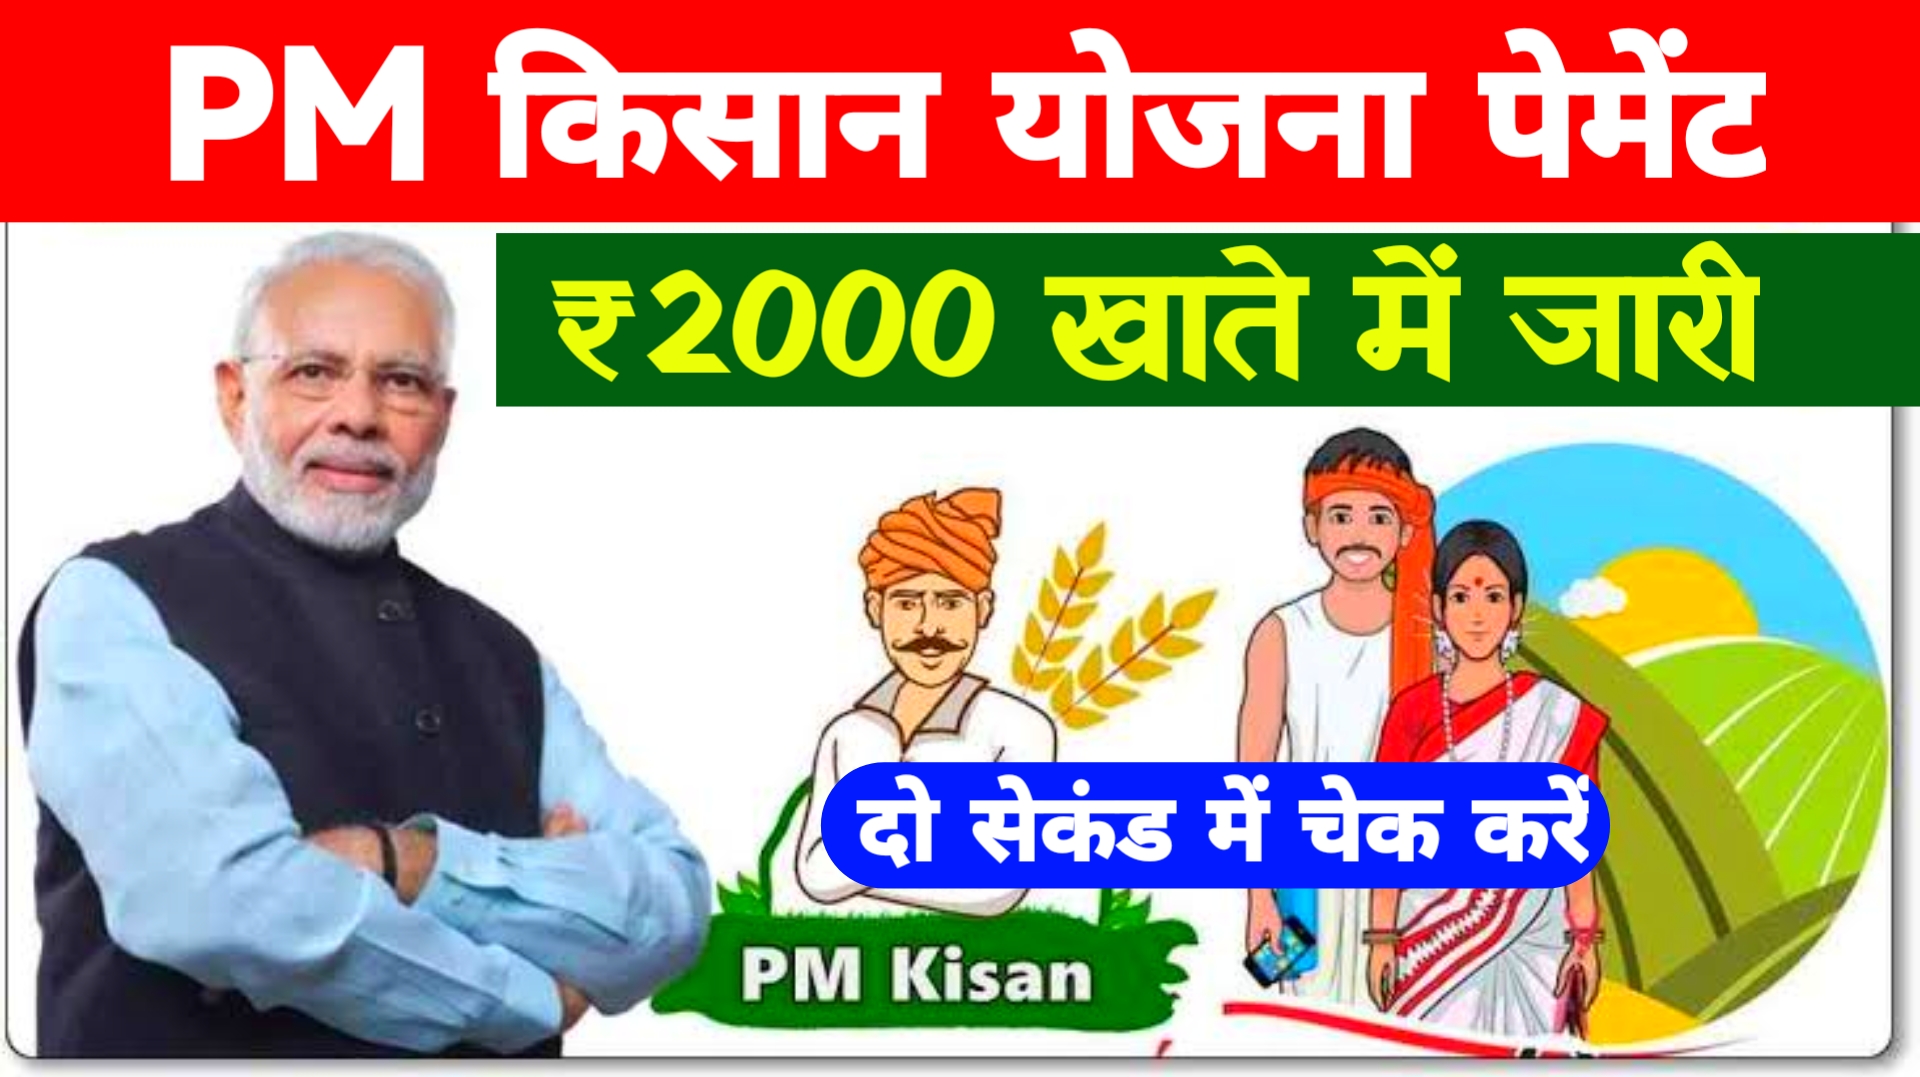 PM Kisan Payment Status : सभी किसानों के खाते में ₹2000 रुपए जारी ऐसे चेक करें